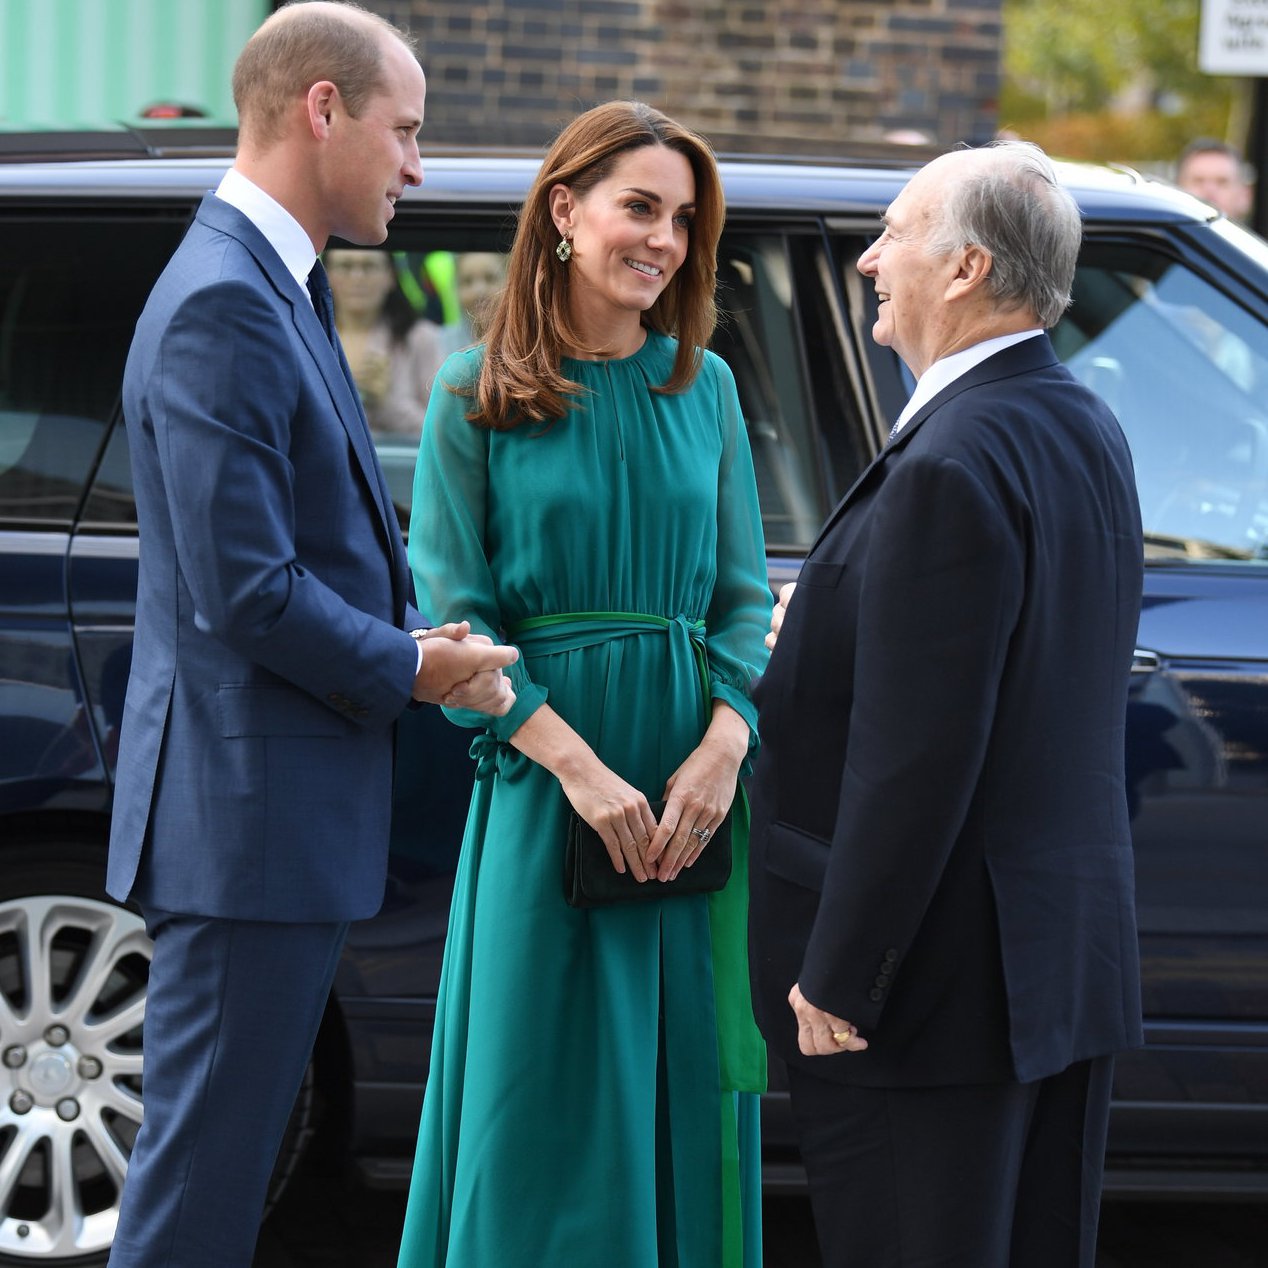 活潑的藍綠色如何穿出知性優雅的氣質？來看2位「時尚女王」凱特王妃與阿拉瑪汀怎麼穿